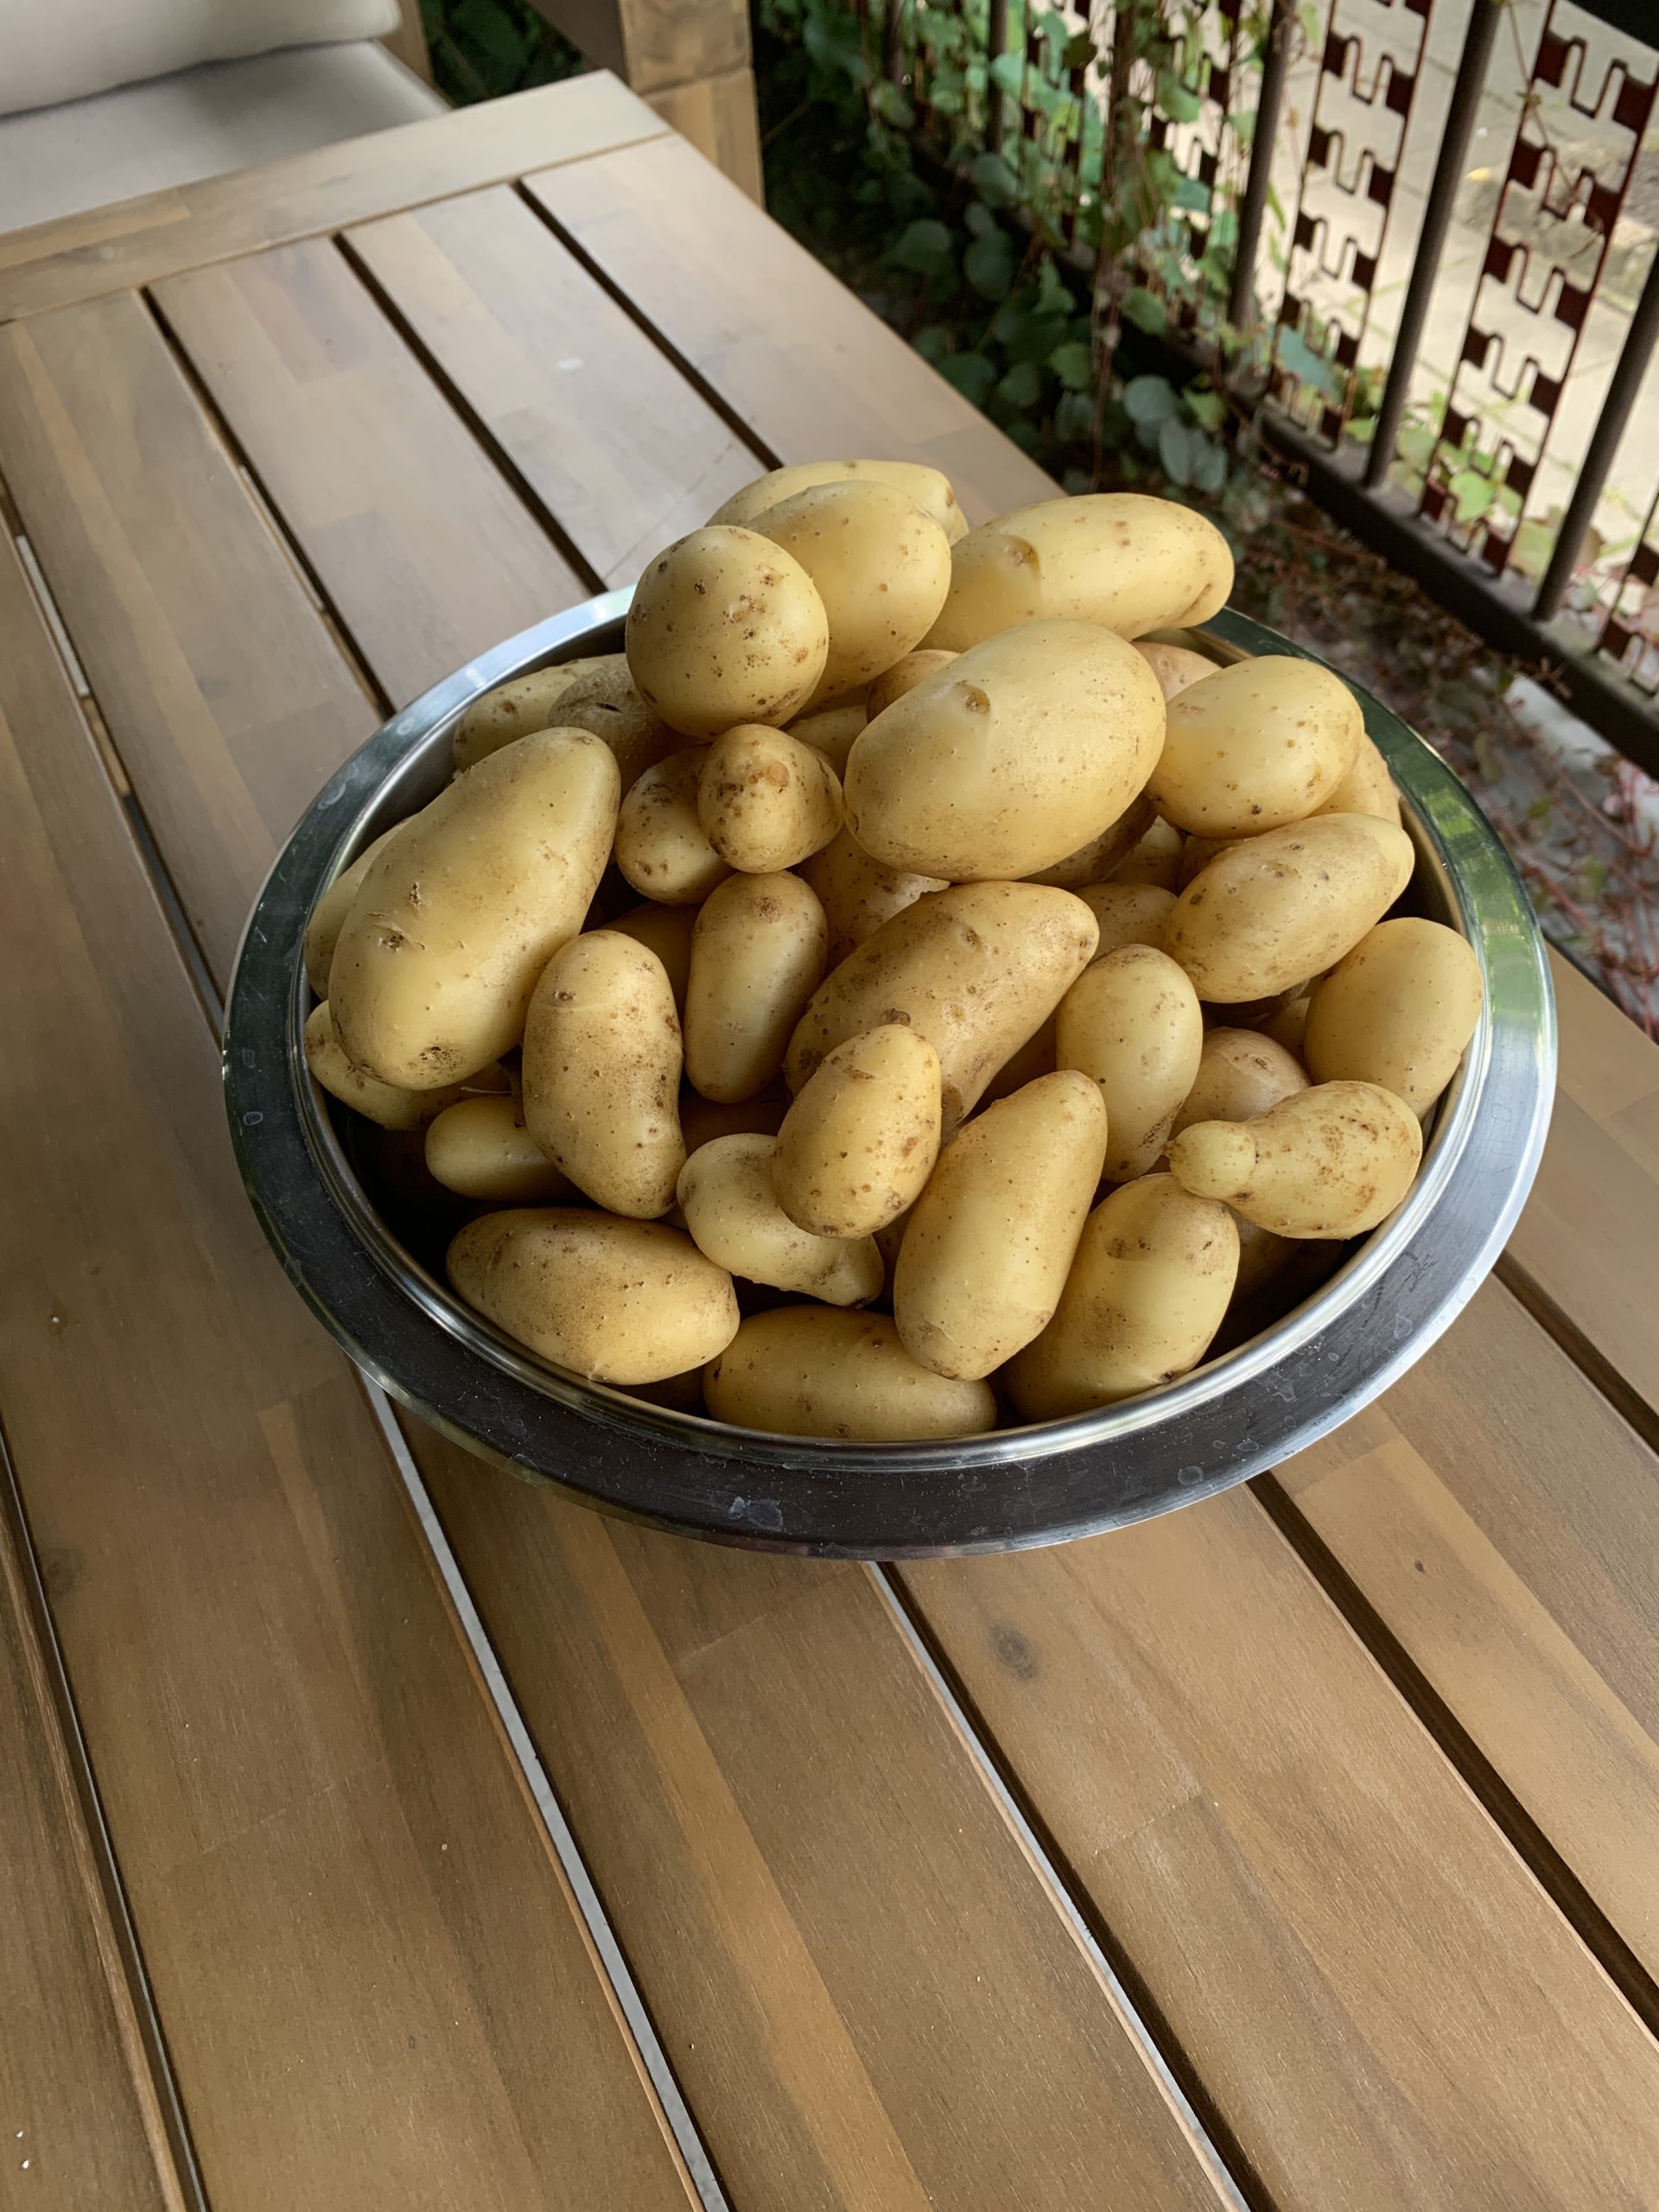 Ernteerfolg der Kartoffelsorte "Annabelle"